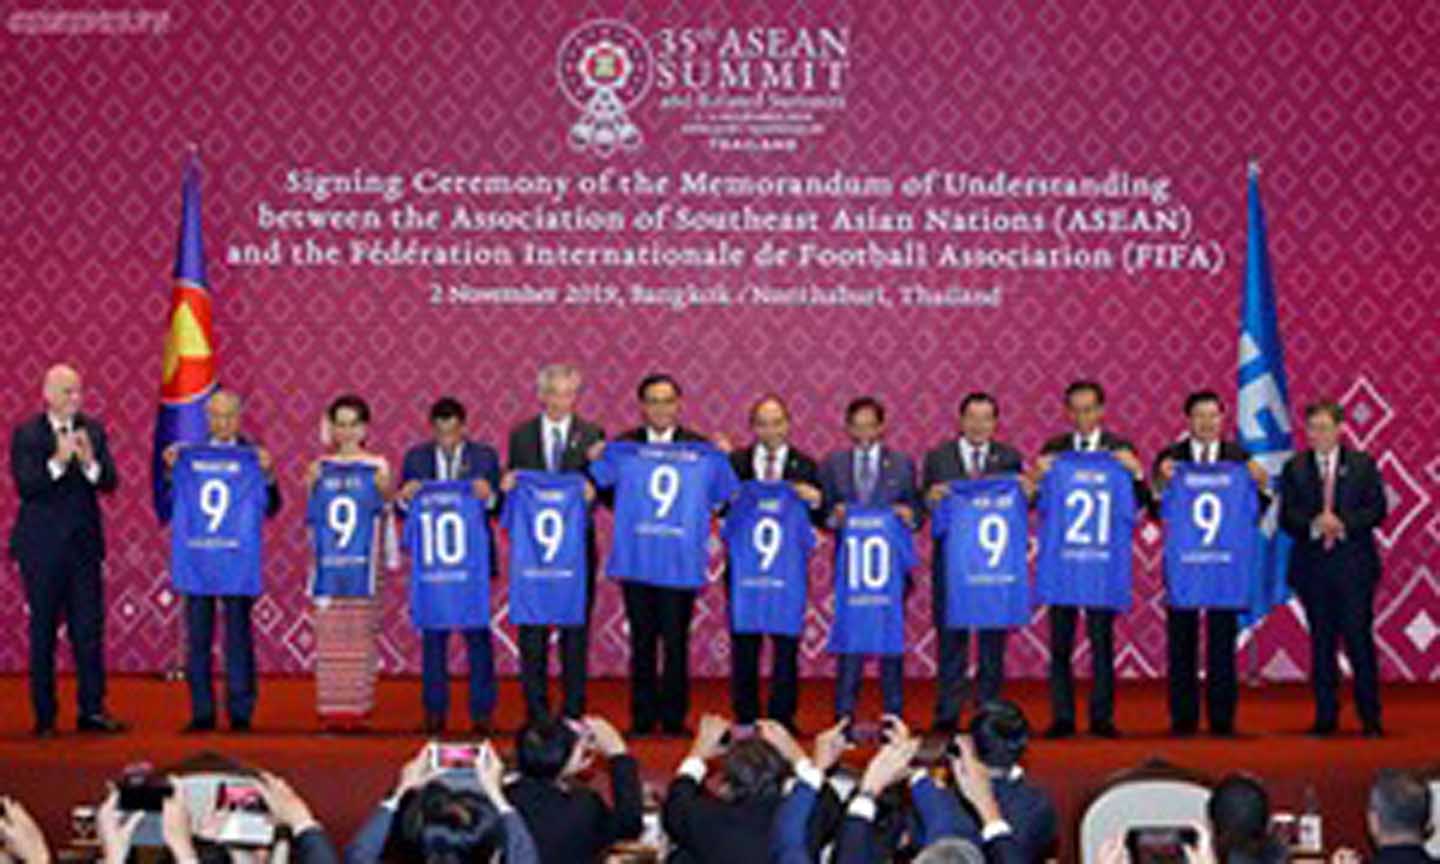 Quang cảnh lễ ký Bản ghi nhớ hợp tác giữa ASEAN và FIFA. Ảnh: VGP/Quang Hiếu